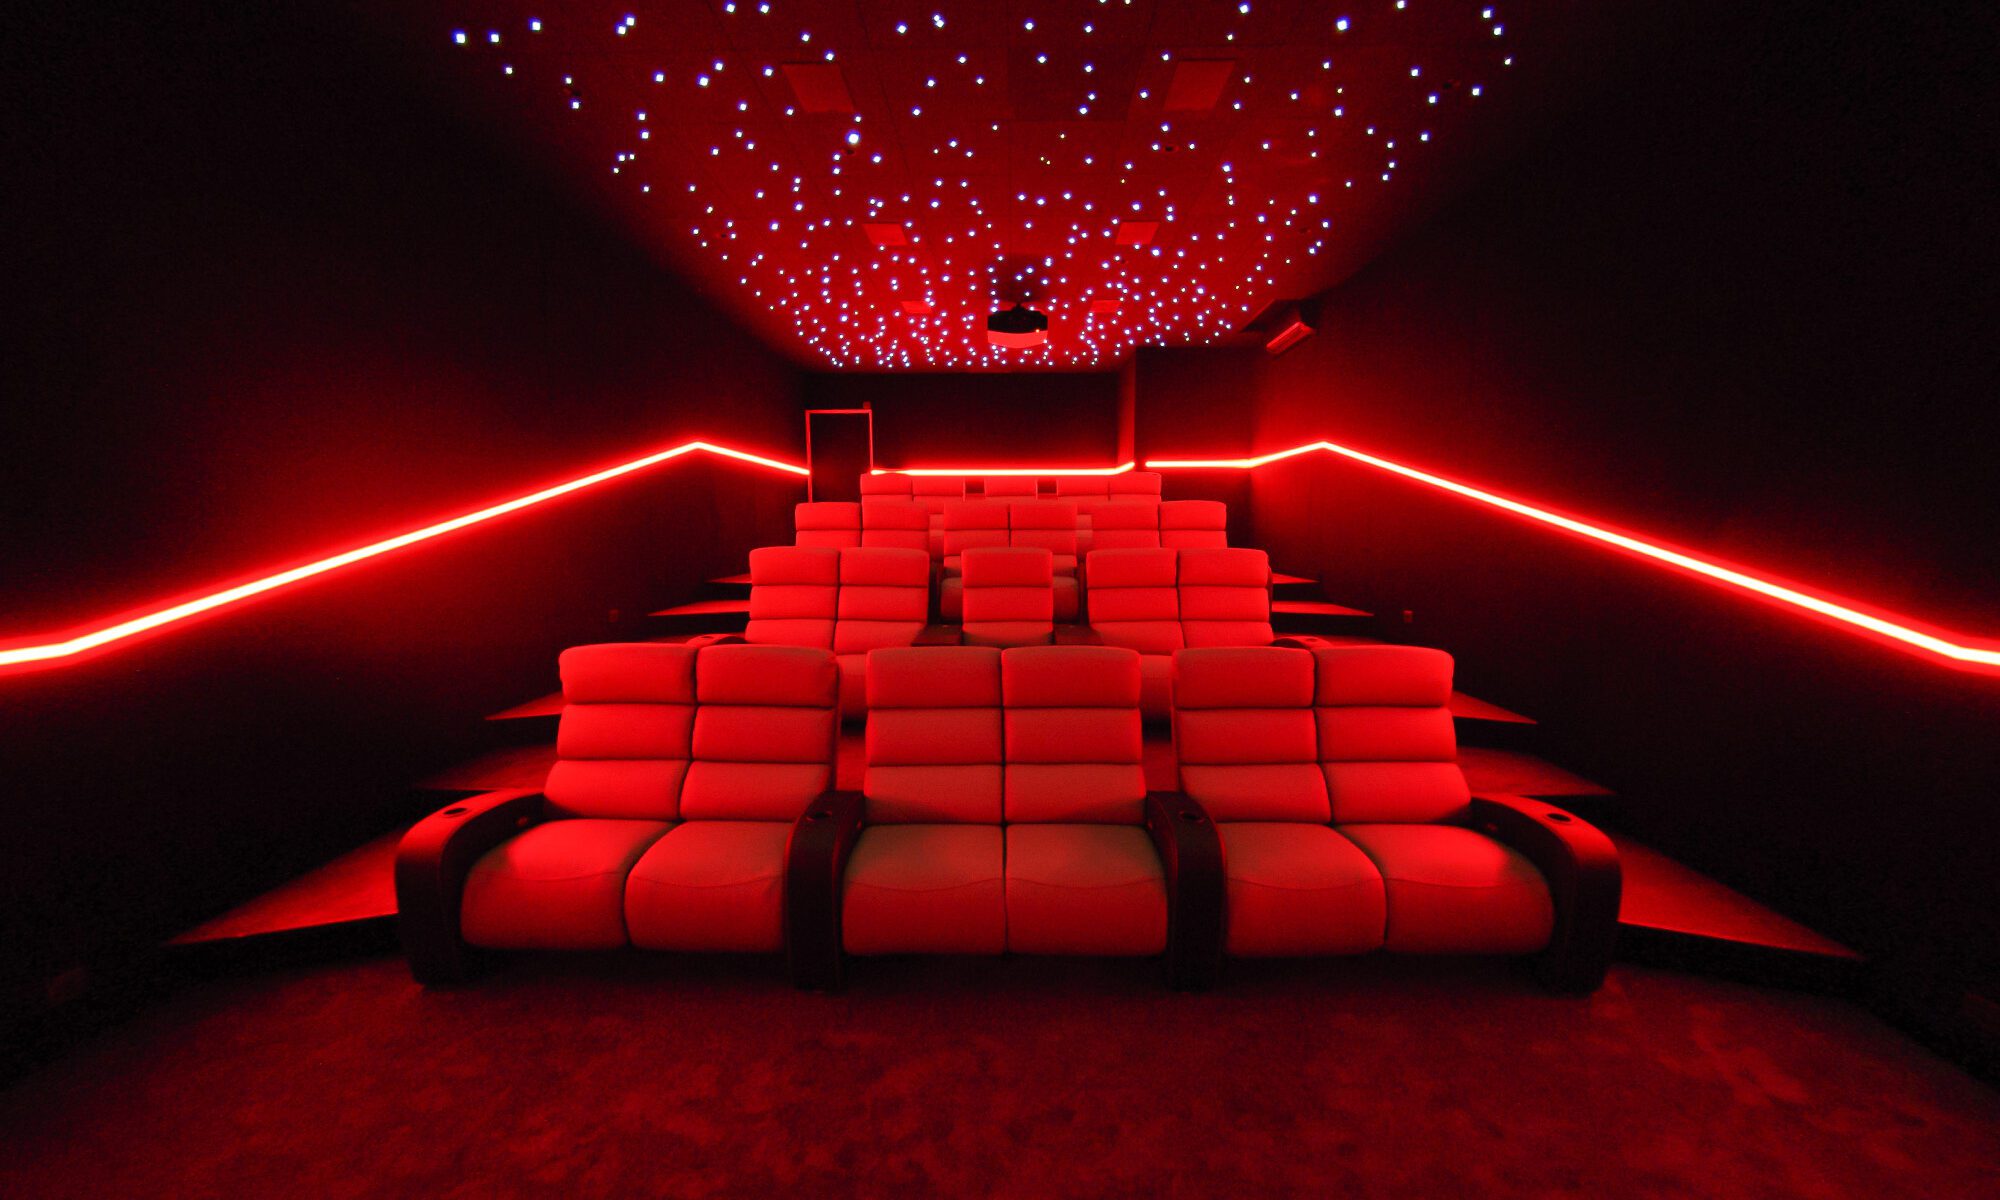 Grande salle de cinéma privée 70m2, 22 places avec fauteuils en cuir gris clair, avant-scène, ciel étoilé, spots, boiserie éclairée, bar avec cave à vin à Conakry